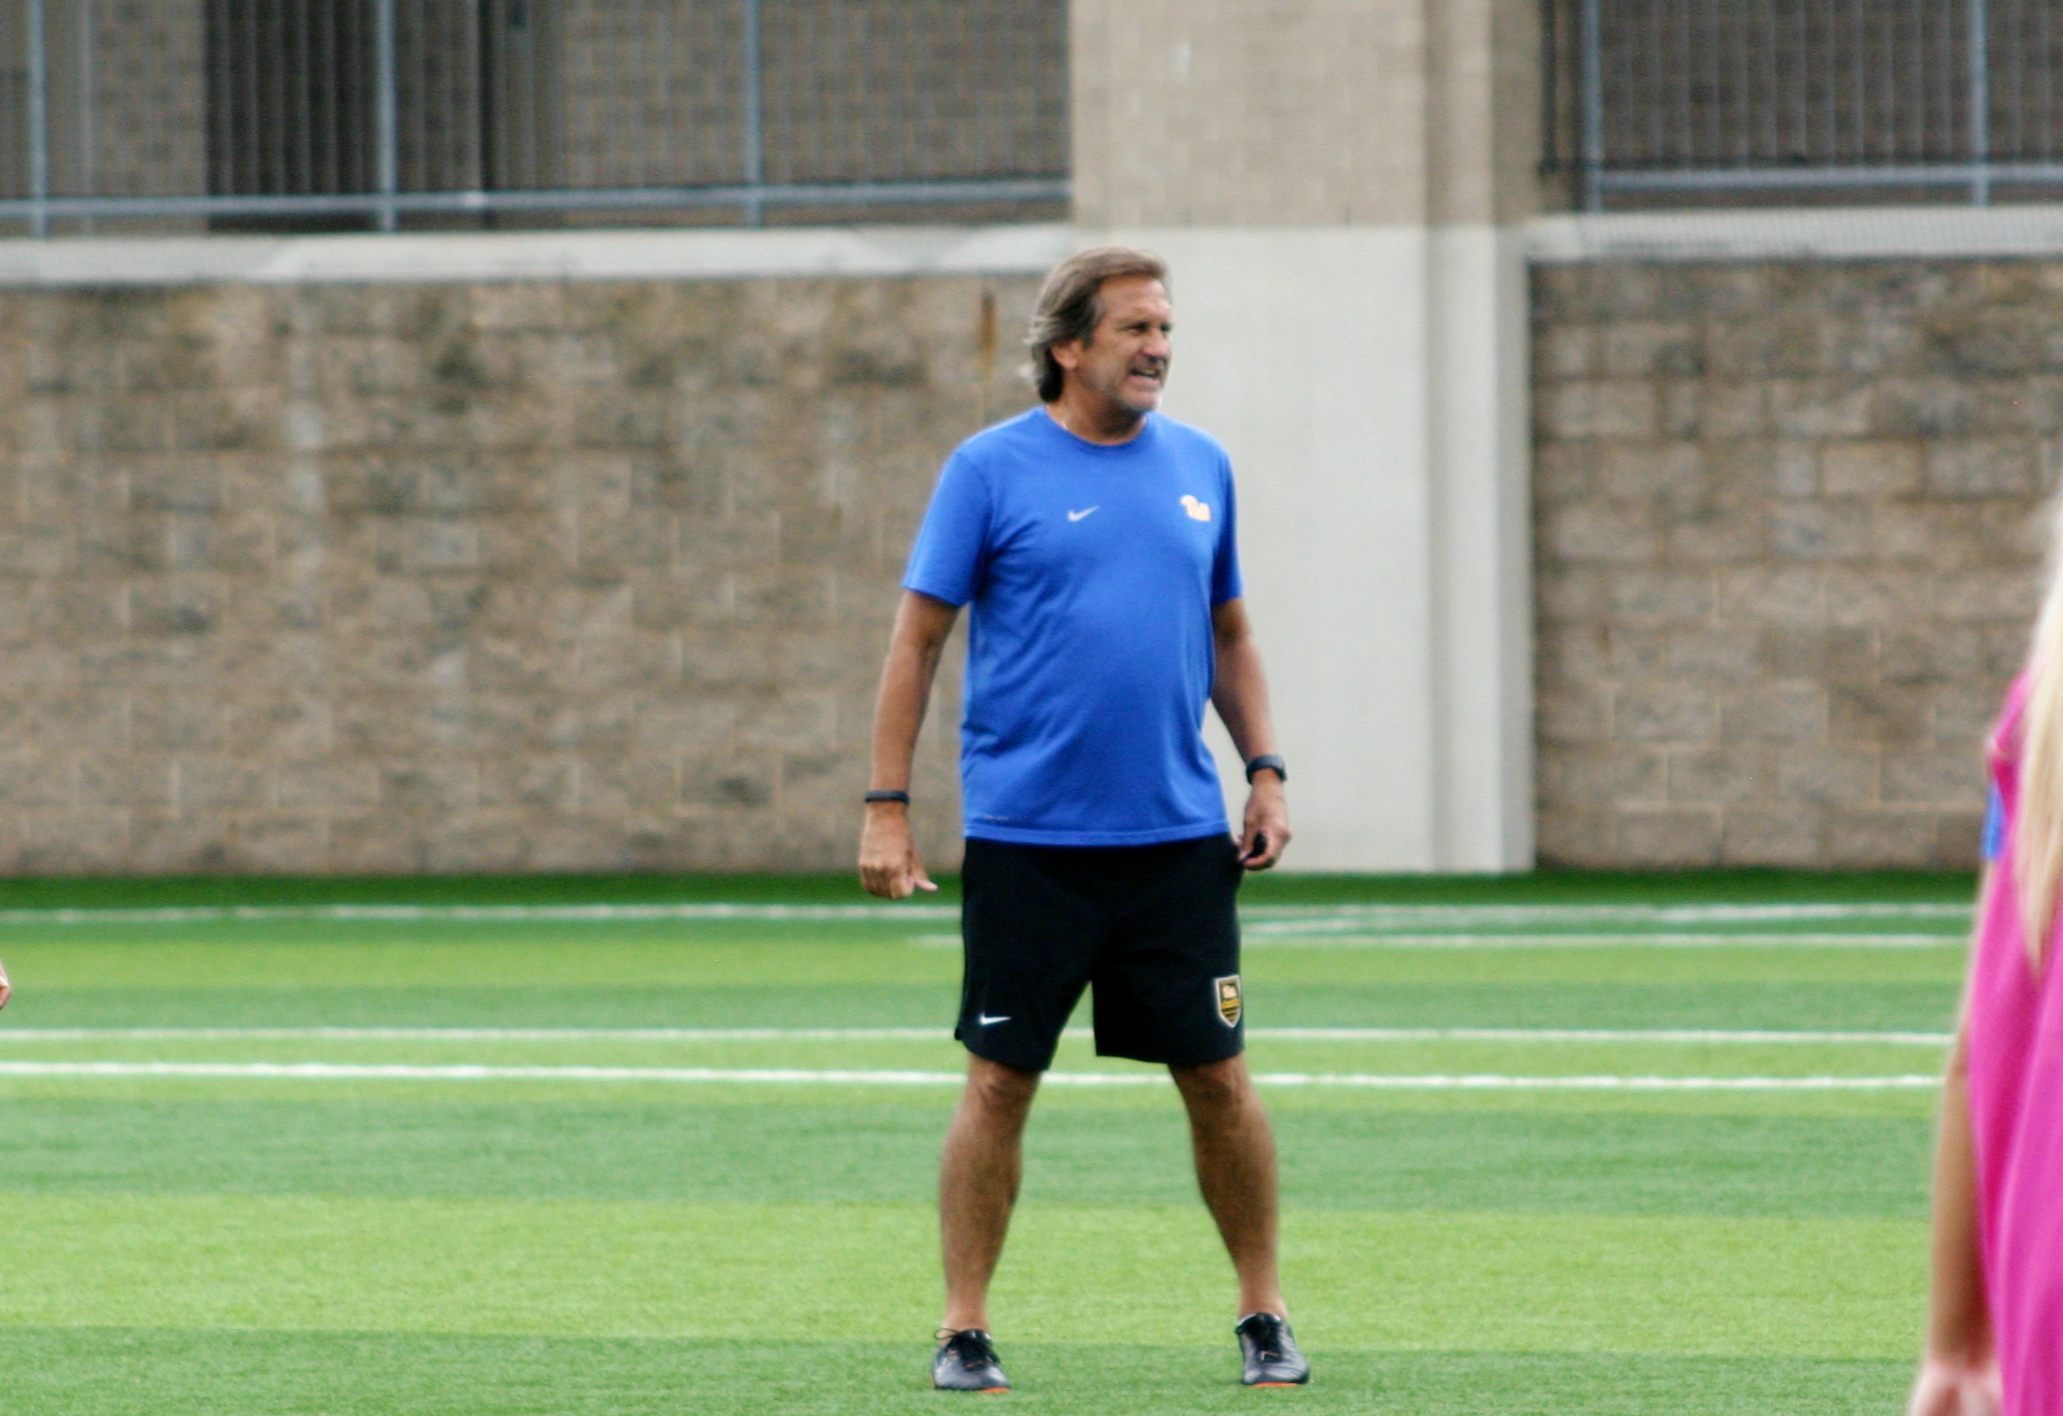 Pitt women's soccer head coach Randy Waldrum